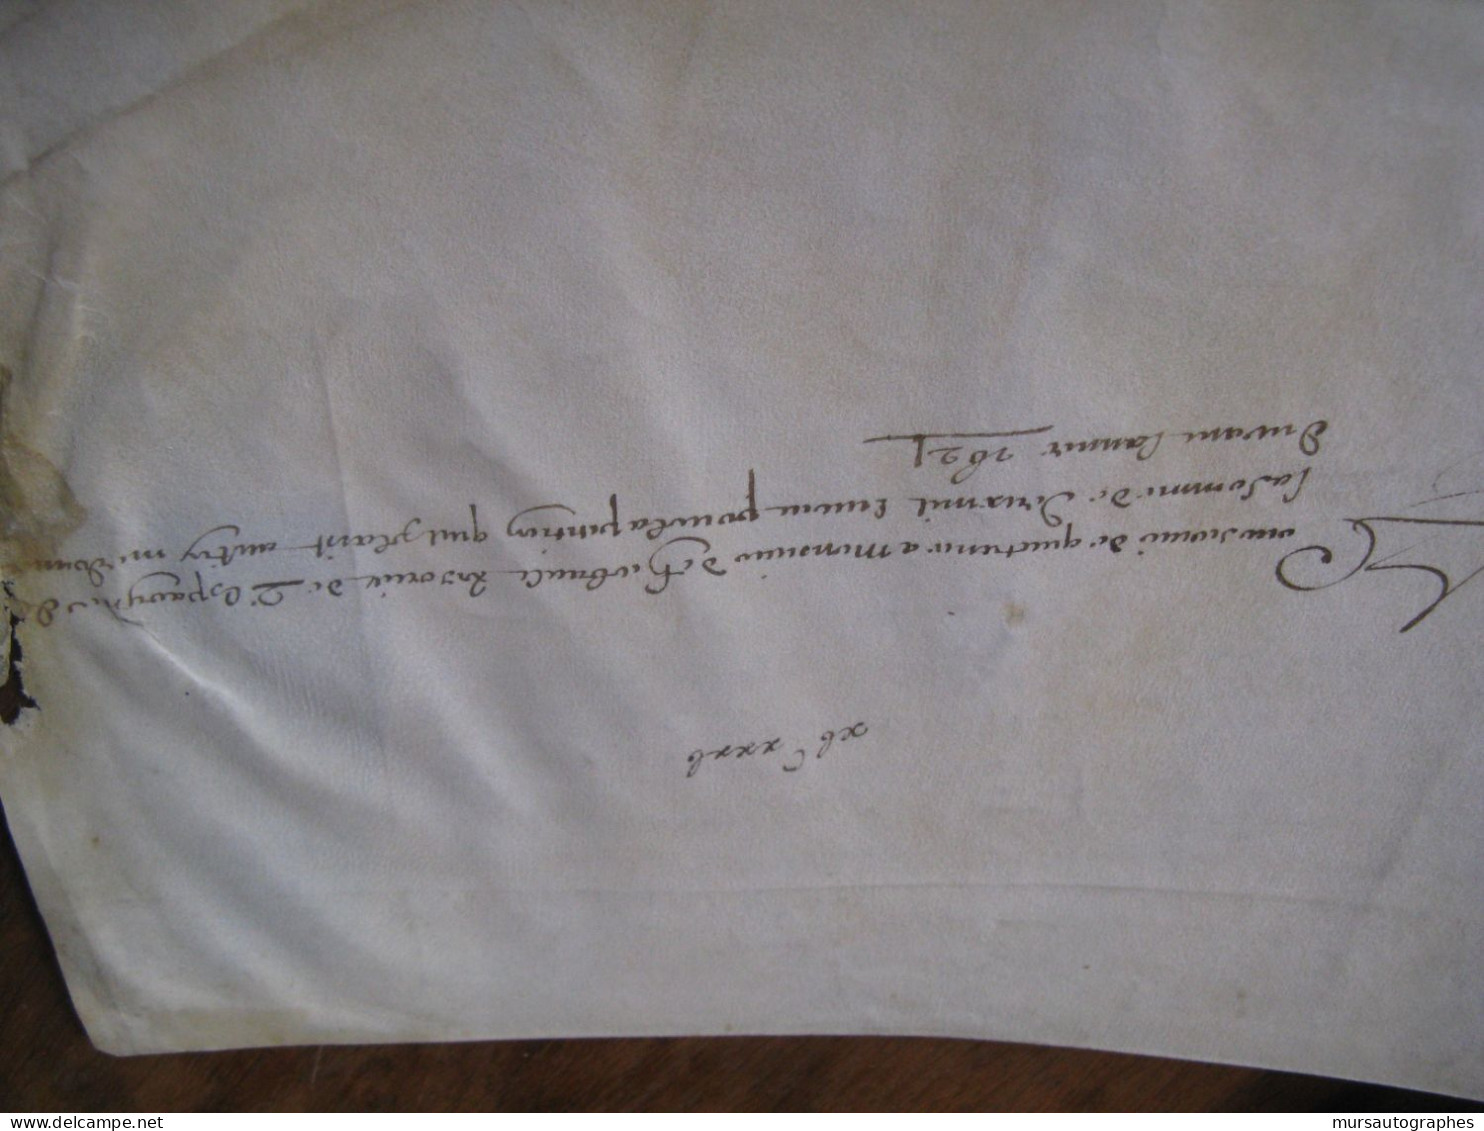 JEAN-BAPTISTE VASSAL Autographe Signé 1621 PHELYPEAUX LOUIS XIII Parchemin RARE - Personnages Historiques